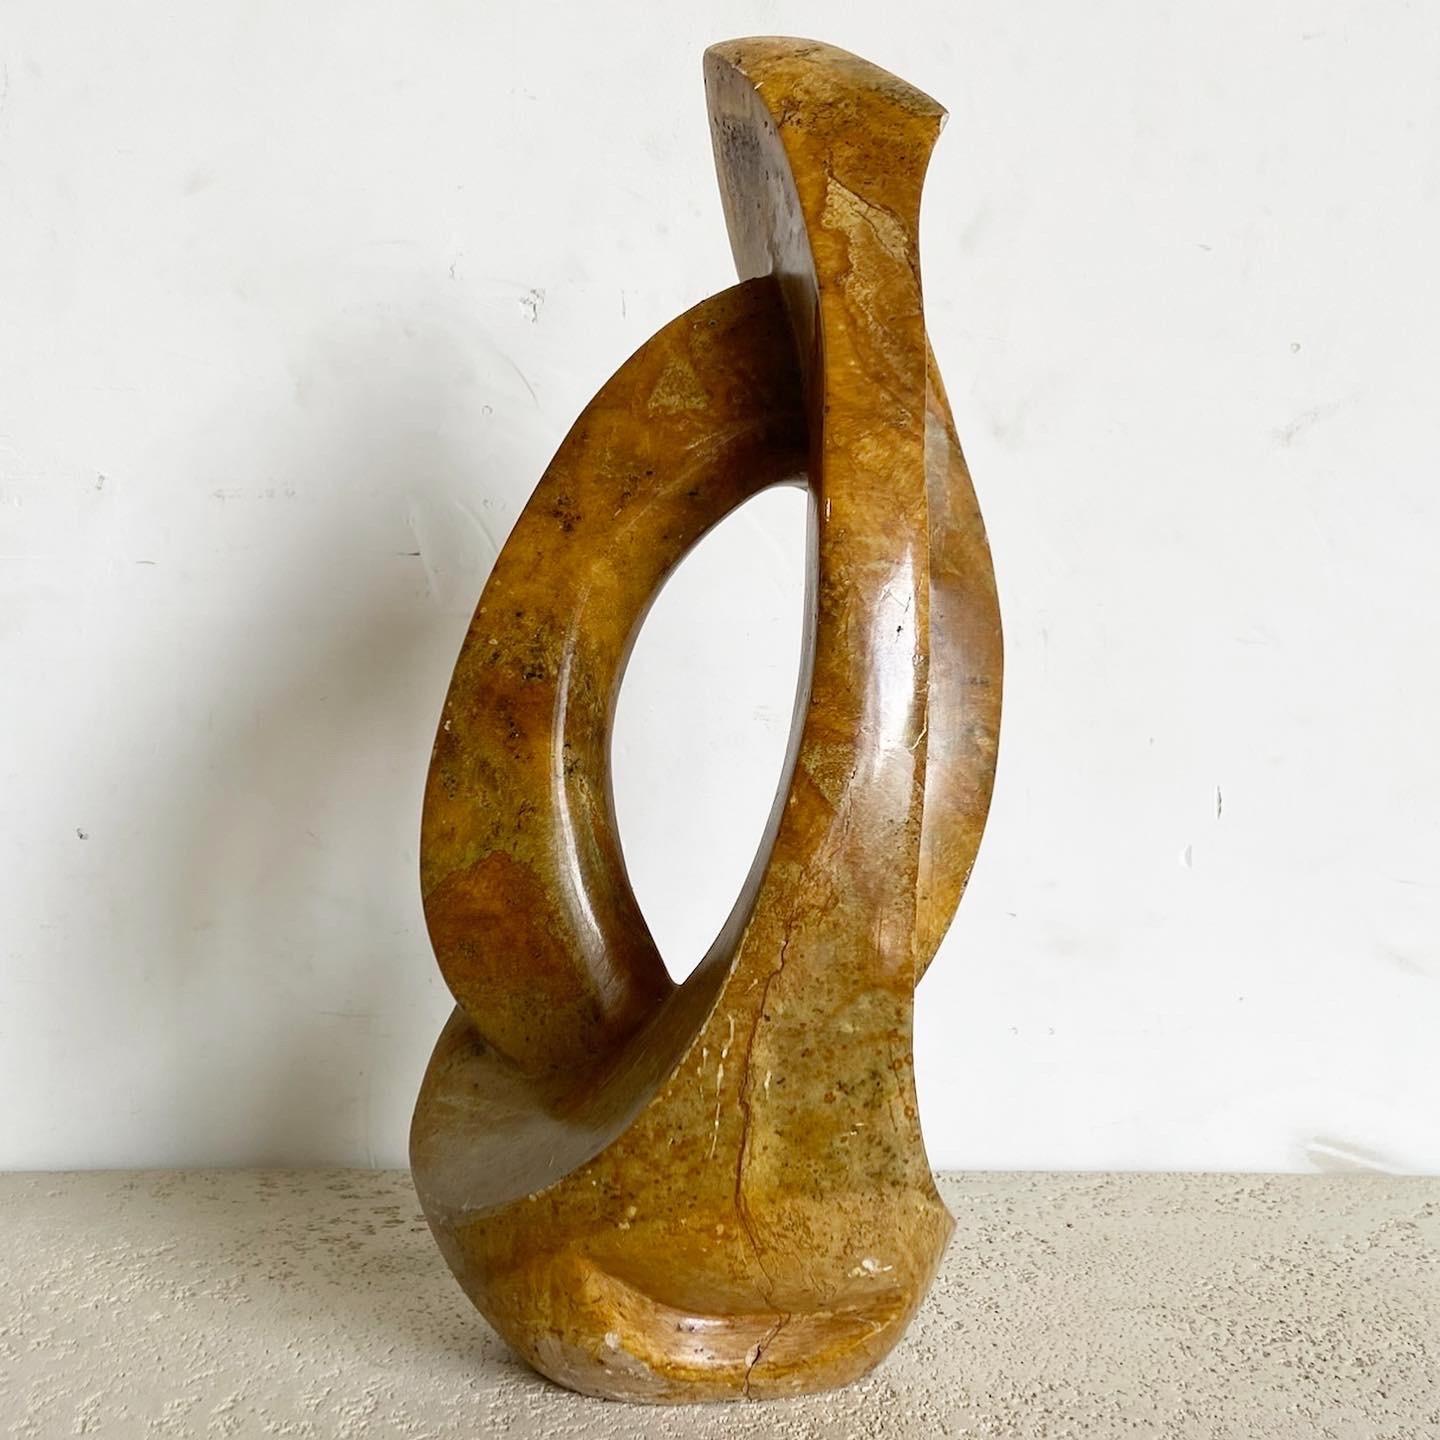 Introduisez une touche de sophistication artistique avec cette sculpture abstraite en pierre brune. Son jeu unique de formes et d'ombres en fait non seulement un point focal étonnant, mais aussi un sujet d'interprétation, enrichissant tout espace